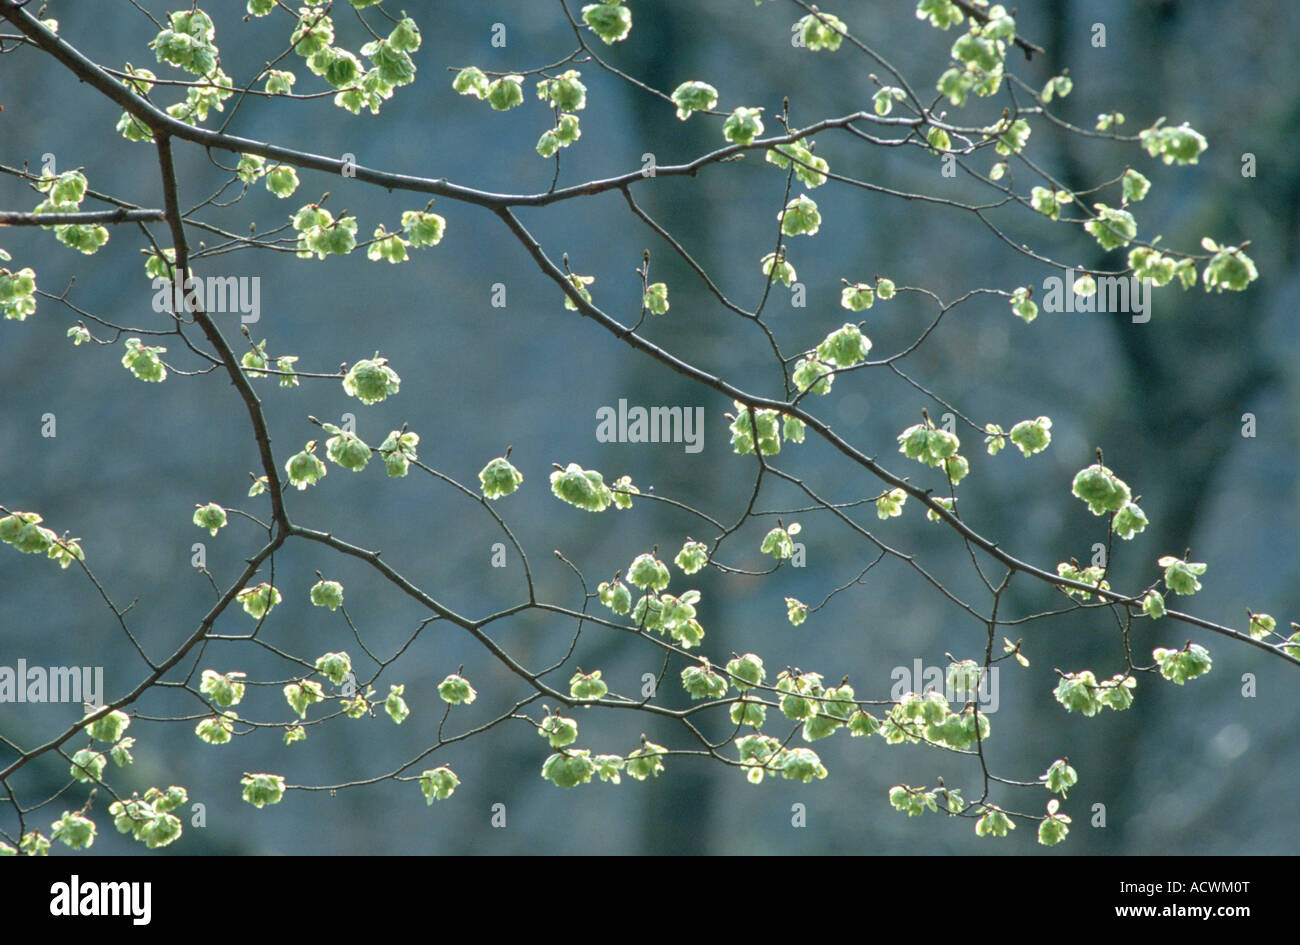 Scotch elm, wych elm (Ulmus glabra, Ulmus scabra), branch with fruis, Germany Stock Photo